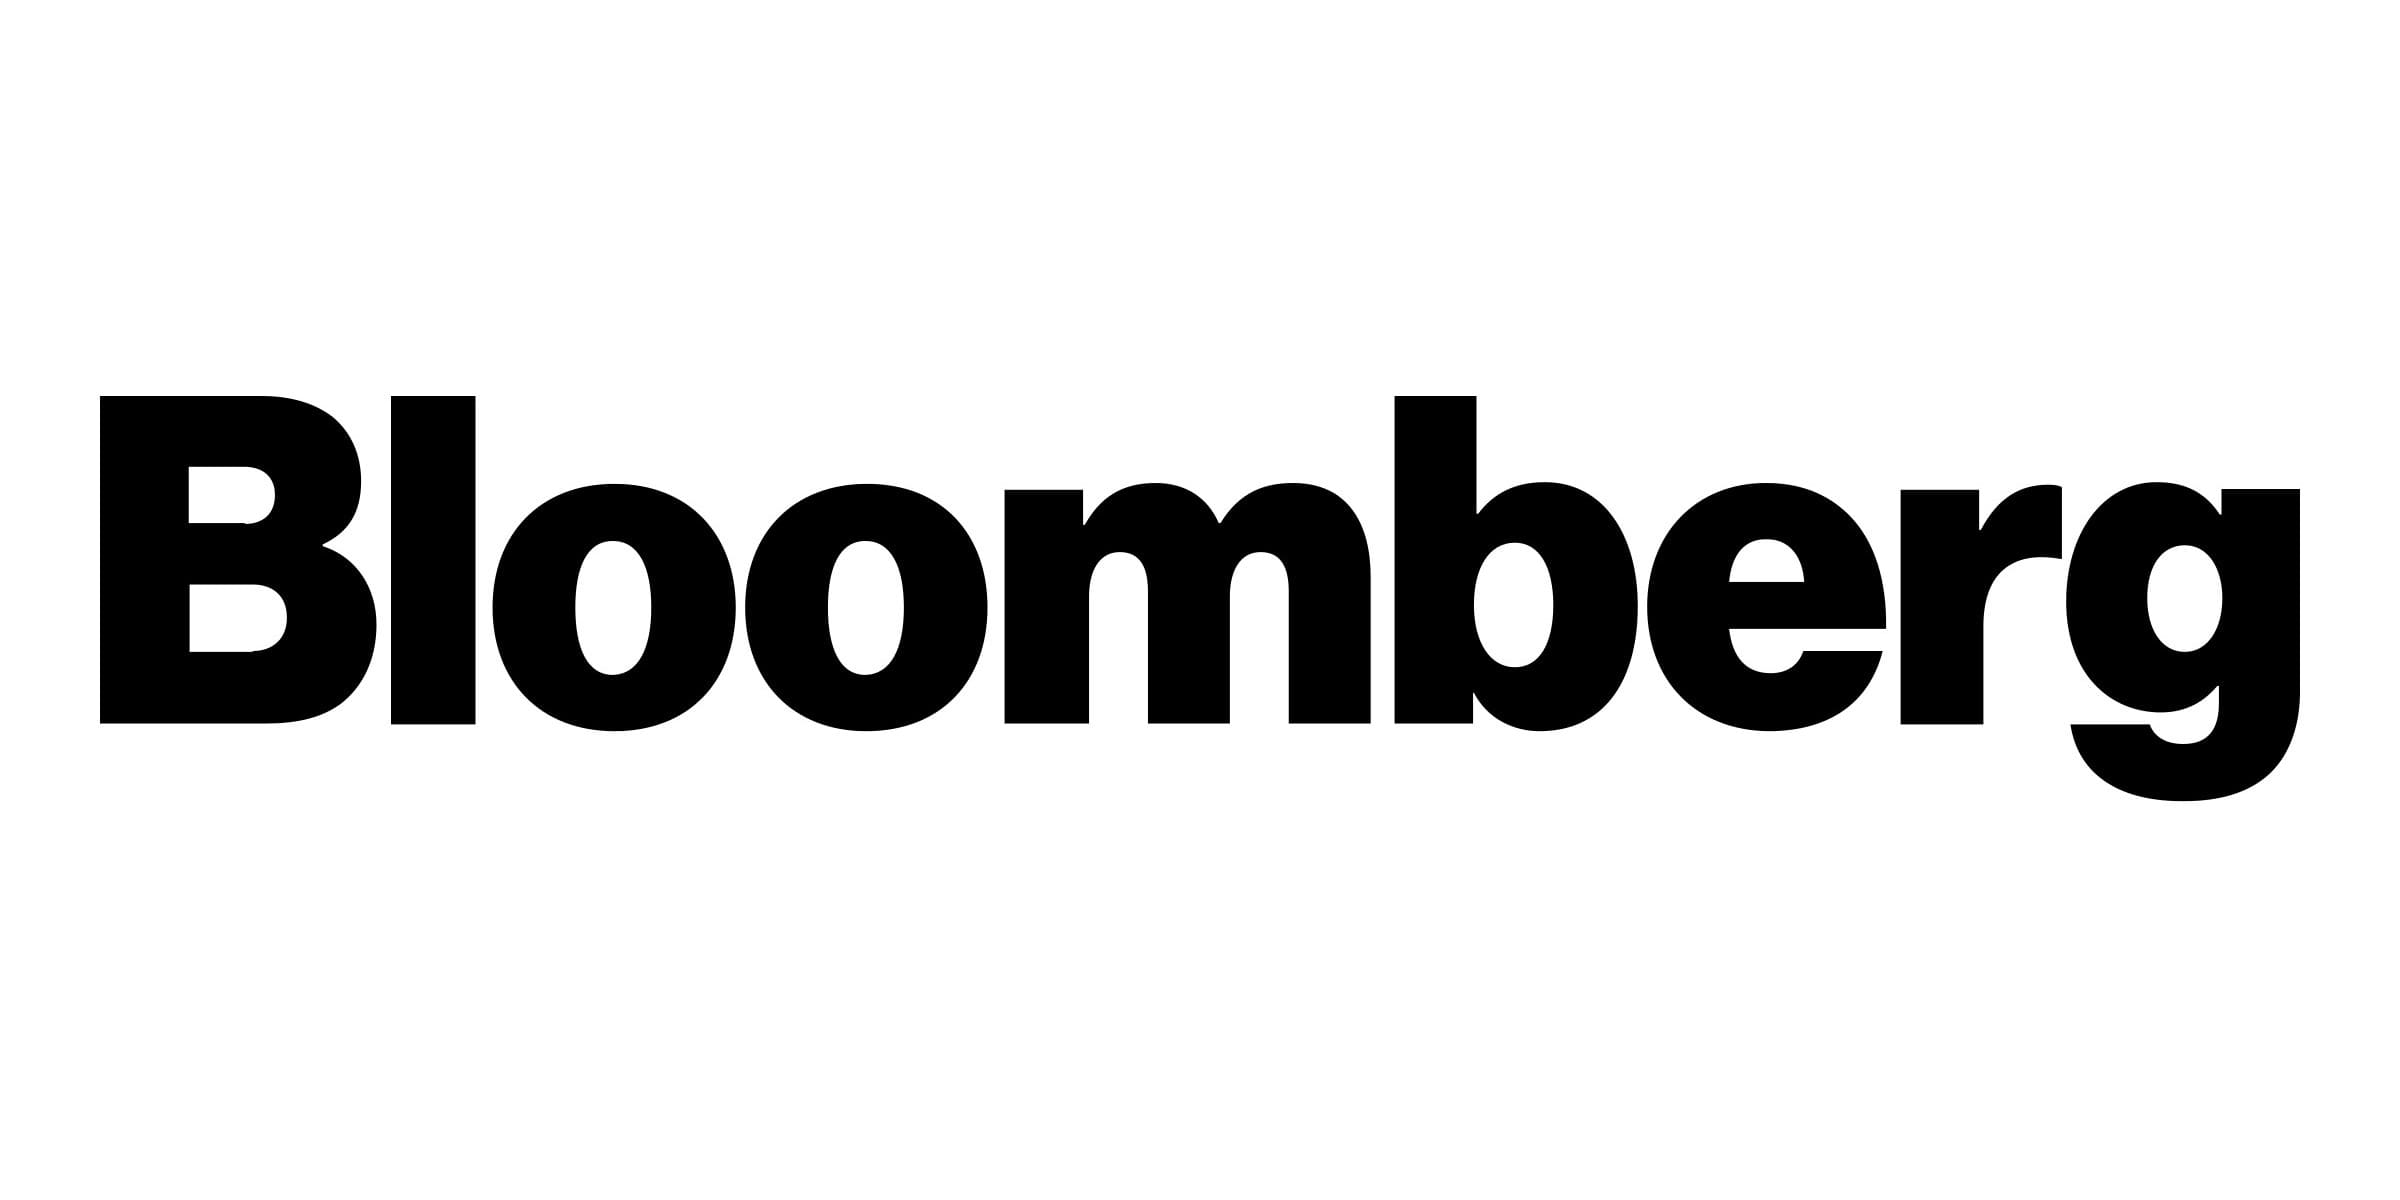 As seen in Bloomberg